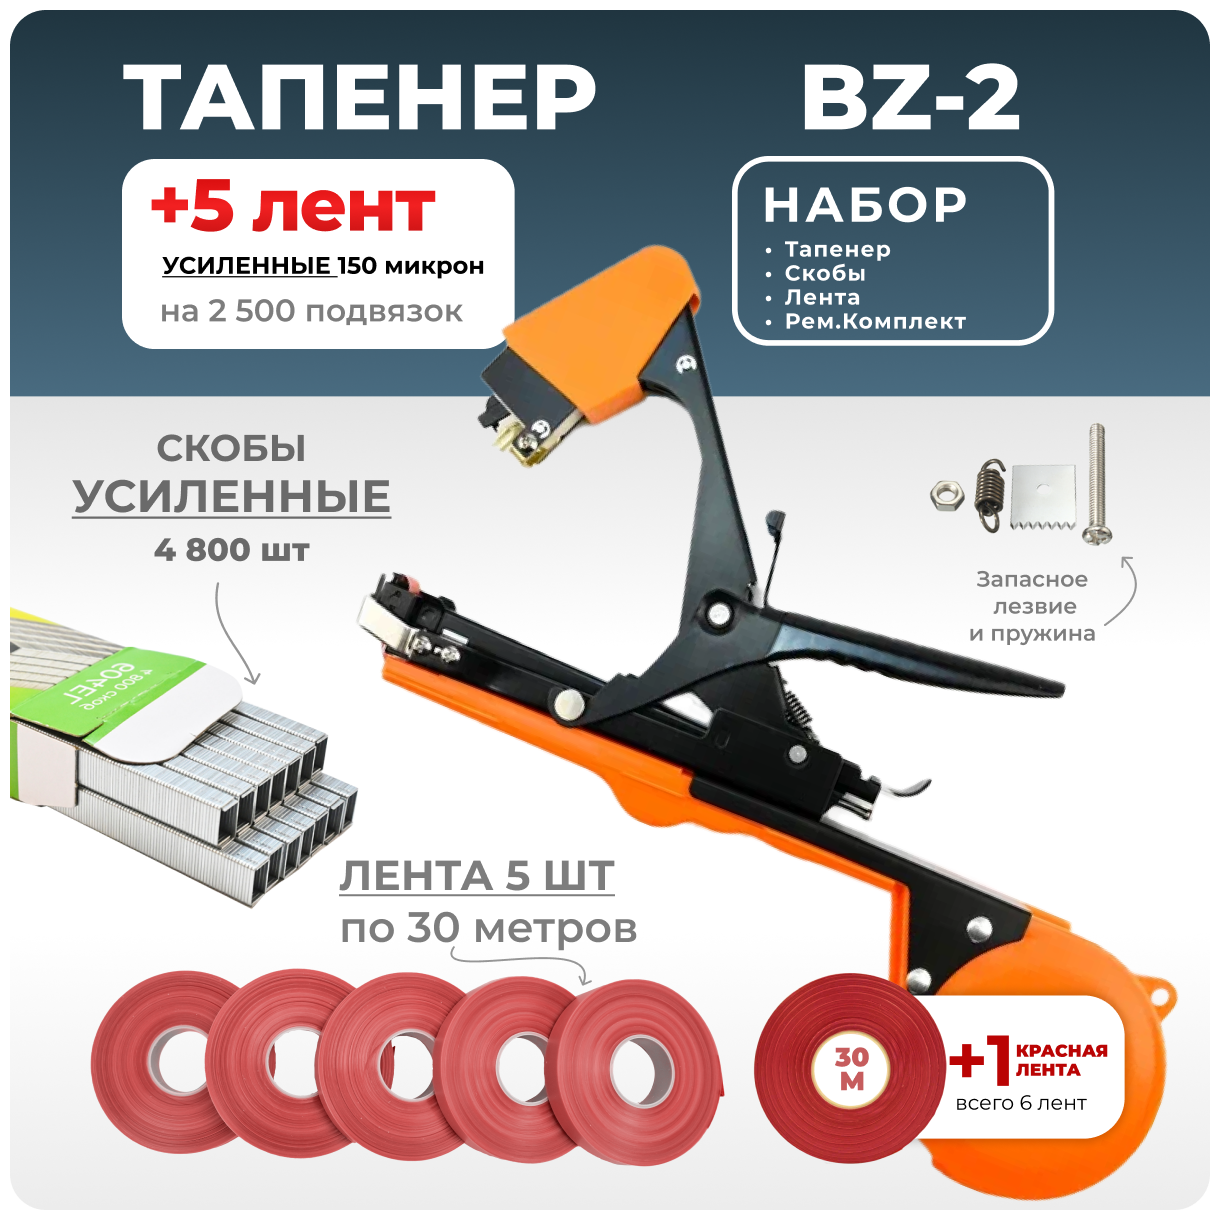 Тапенер для подвязки Bz-2 + 5 красных лент + скобы Агромадана 4.800 шт + ремкомплект / Готовый комплект для подвязки